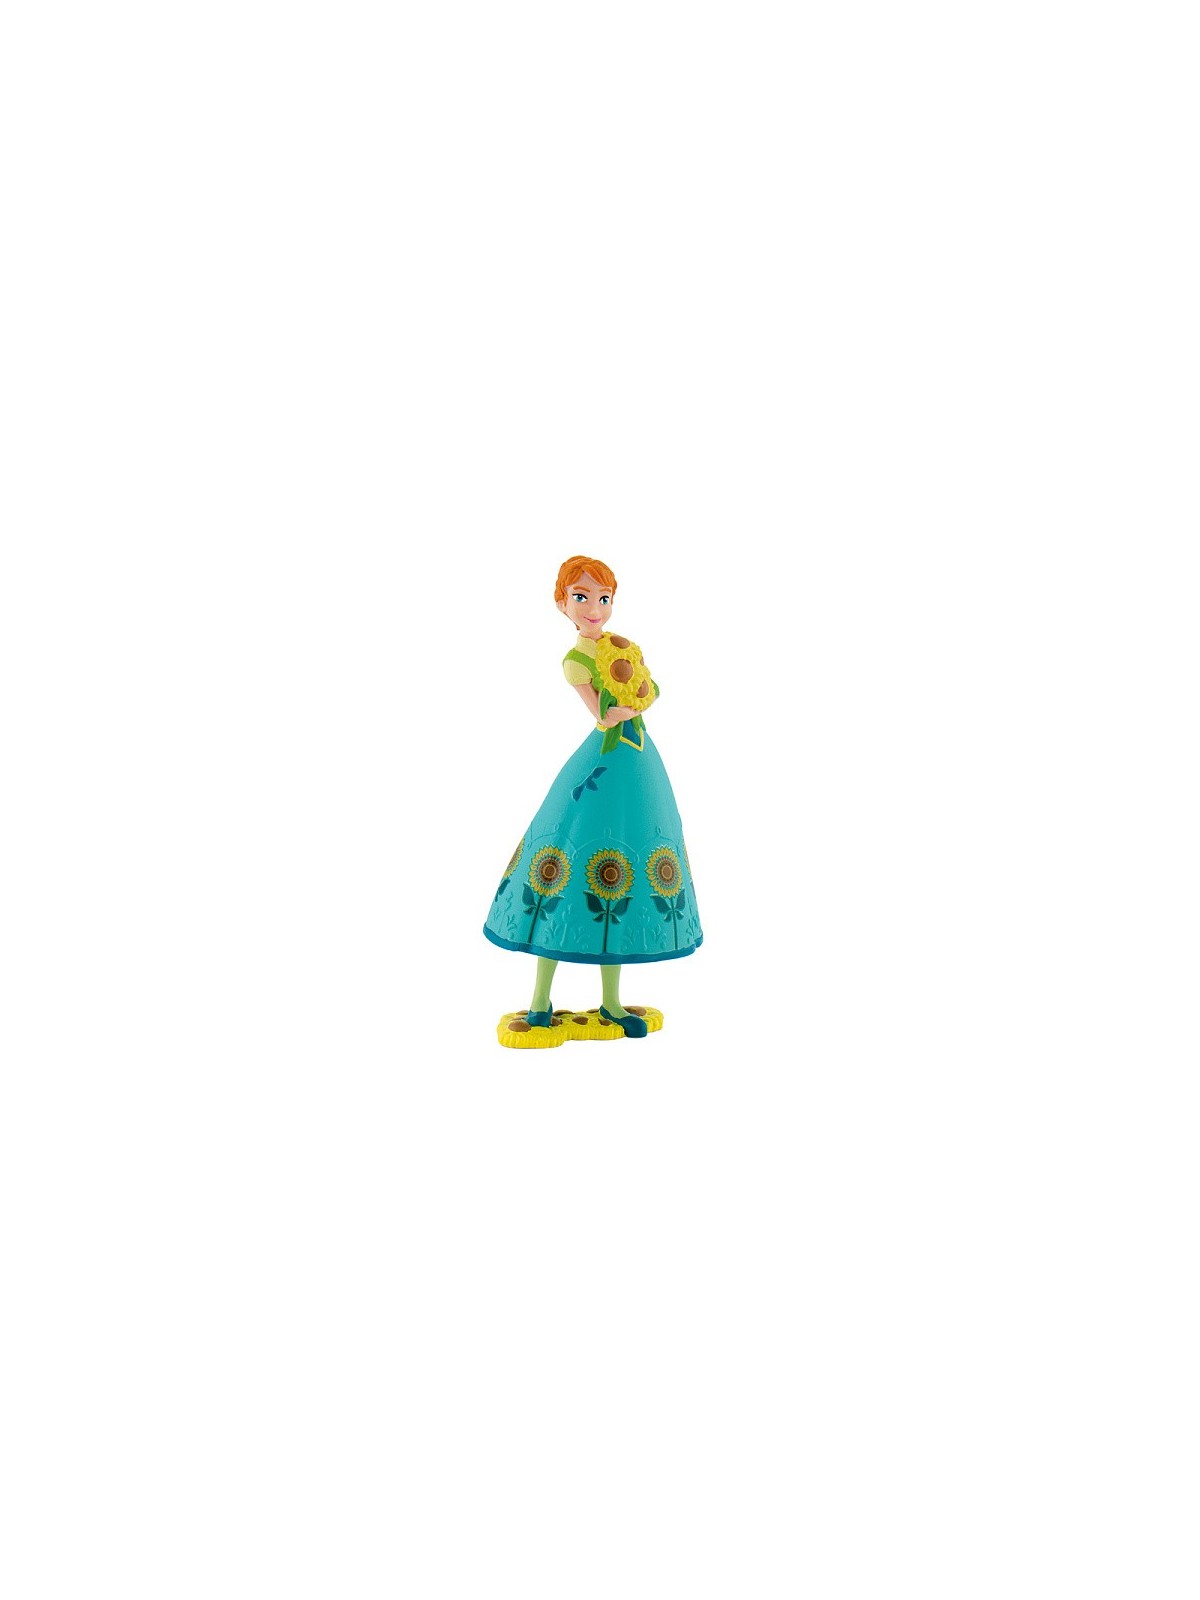 Dekorační figurka - Disney Figure - Frozen - Anna - zelená